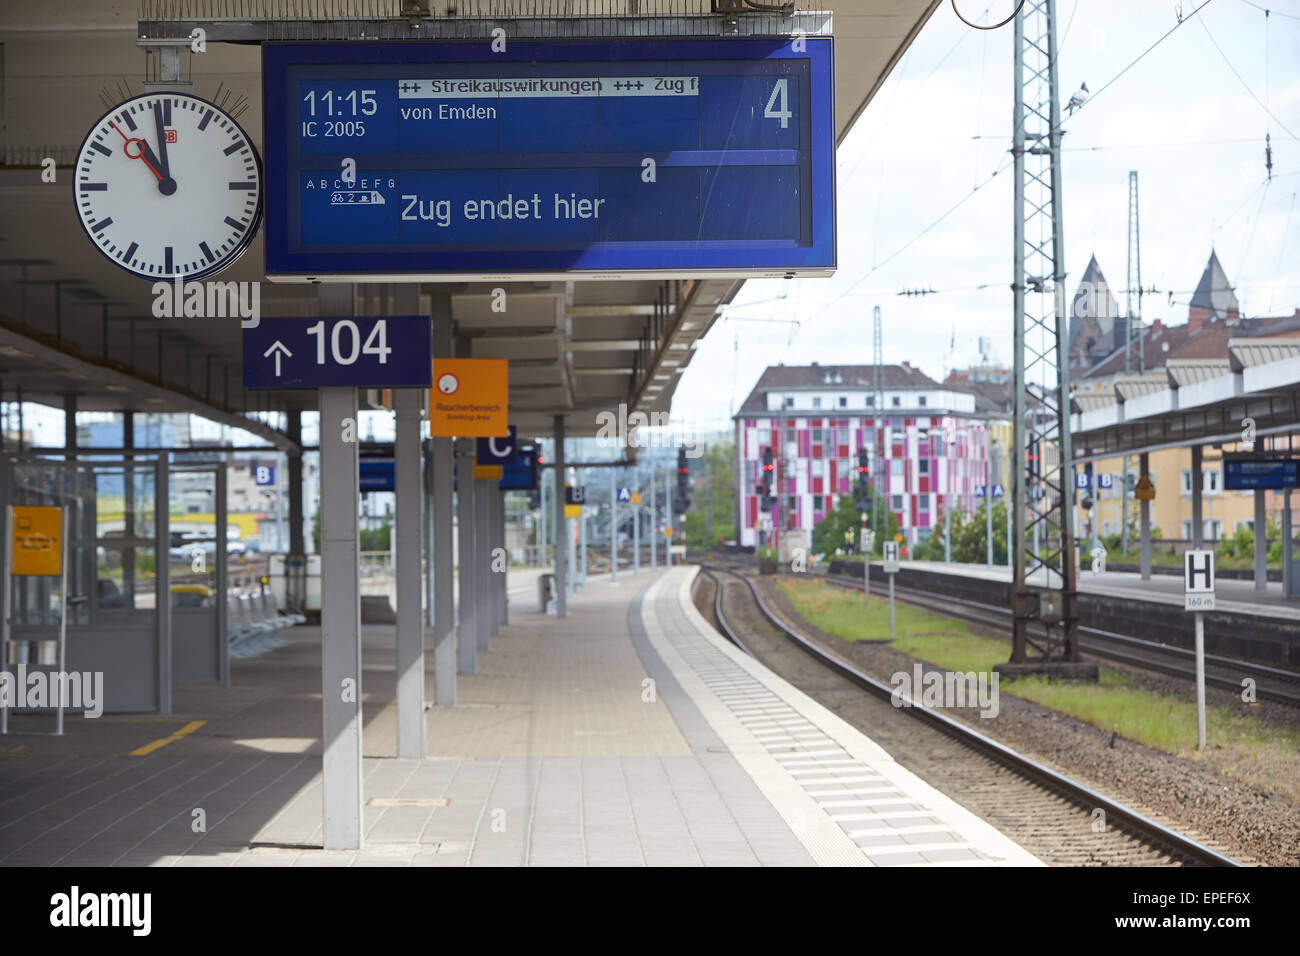 Informationsbildschirm am Hauptbahnhof, Züge abgesagt wegen Streik, Koblenz, Rheinland-Pfalz, Deutschland Stockfoto